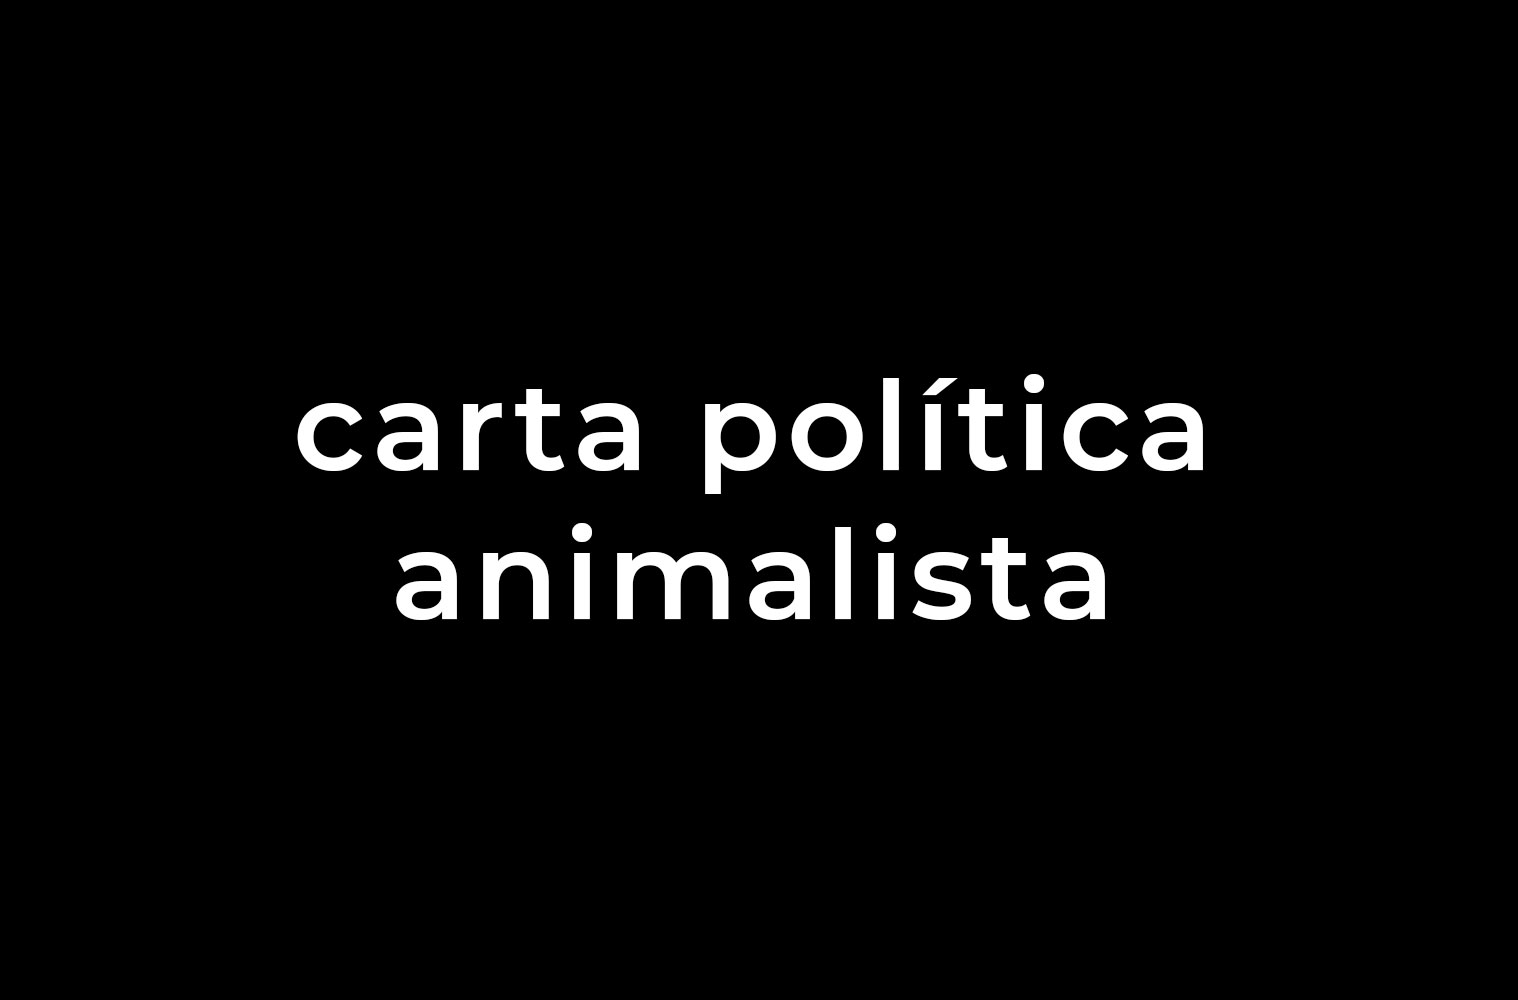 Fundo preto com texto em letras brancas dizendo "carta política animalista"